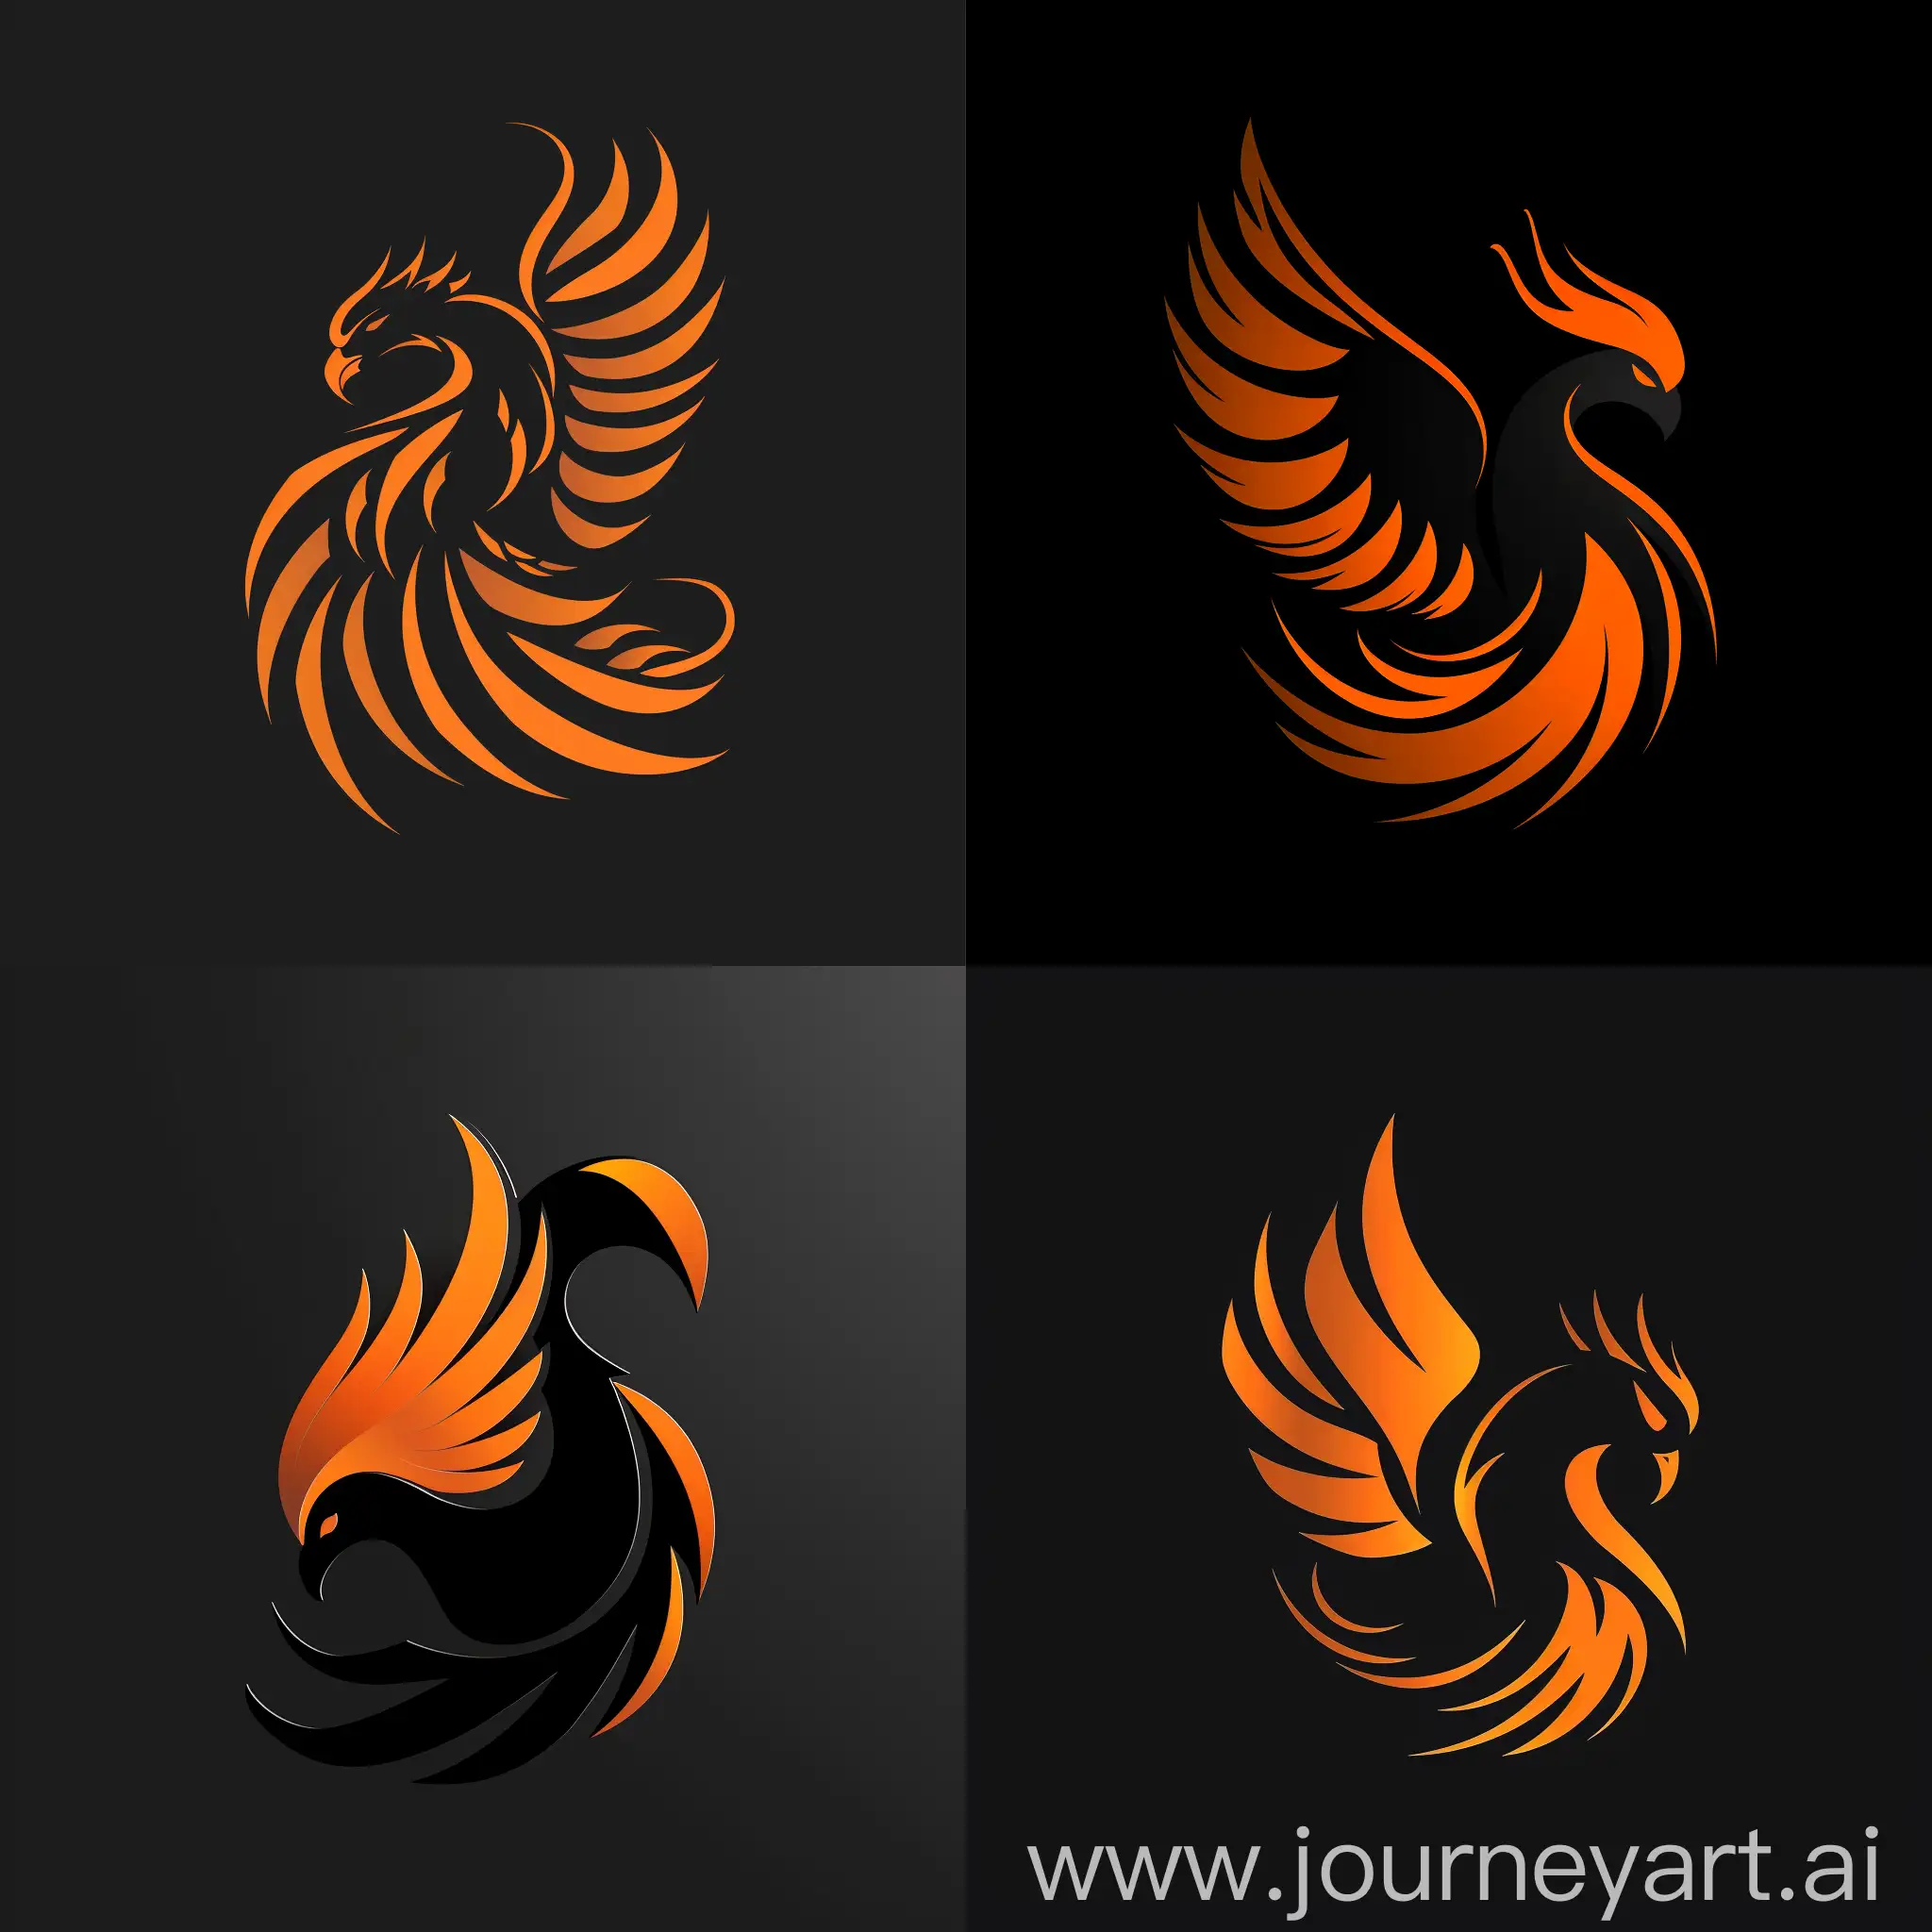 птица феникс в черно-оранжевых тонах, логотип в высоком разрешении